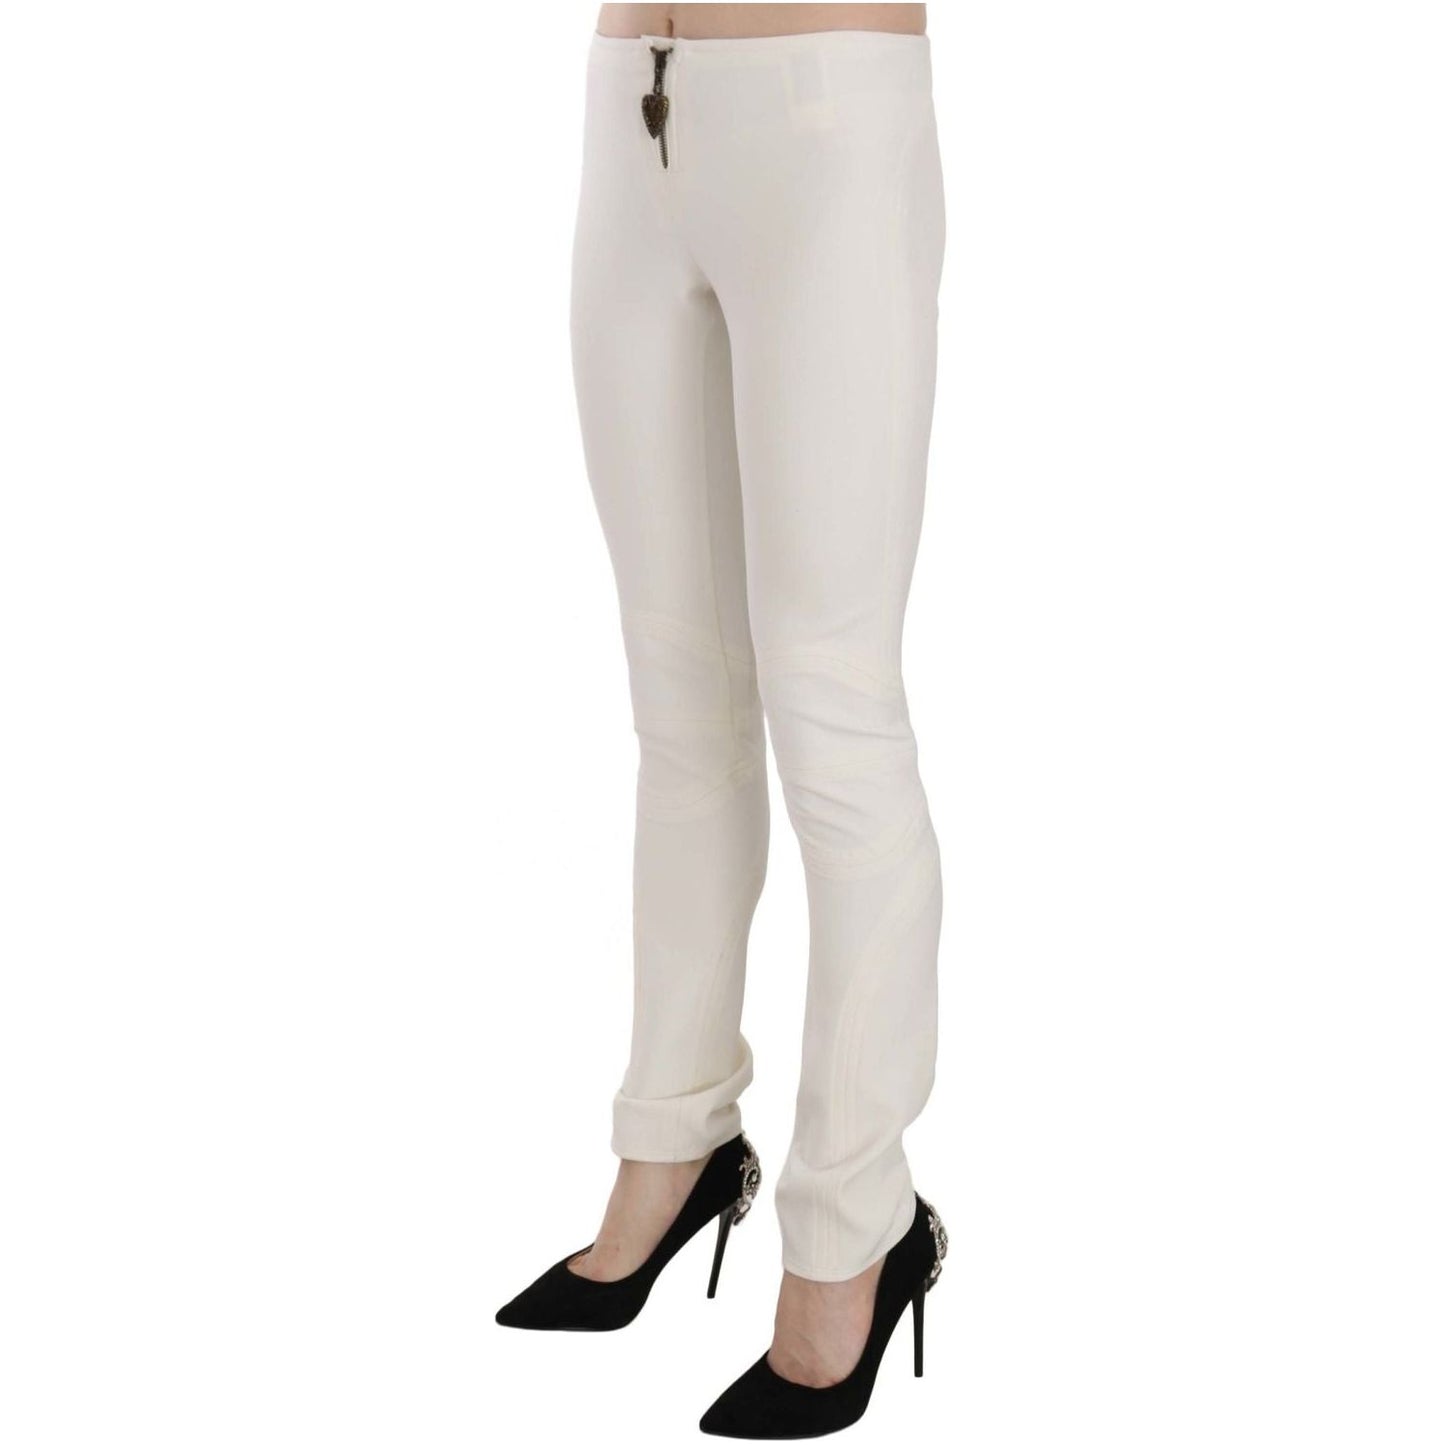 Just Cavalli Elegant Mid Waist Skinny Dress Pants white-mid-waist-skinny-dress-trousers-pants IMG_6203-scaled-5ec172c1-6c7.jpg